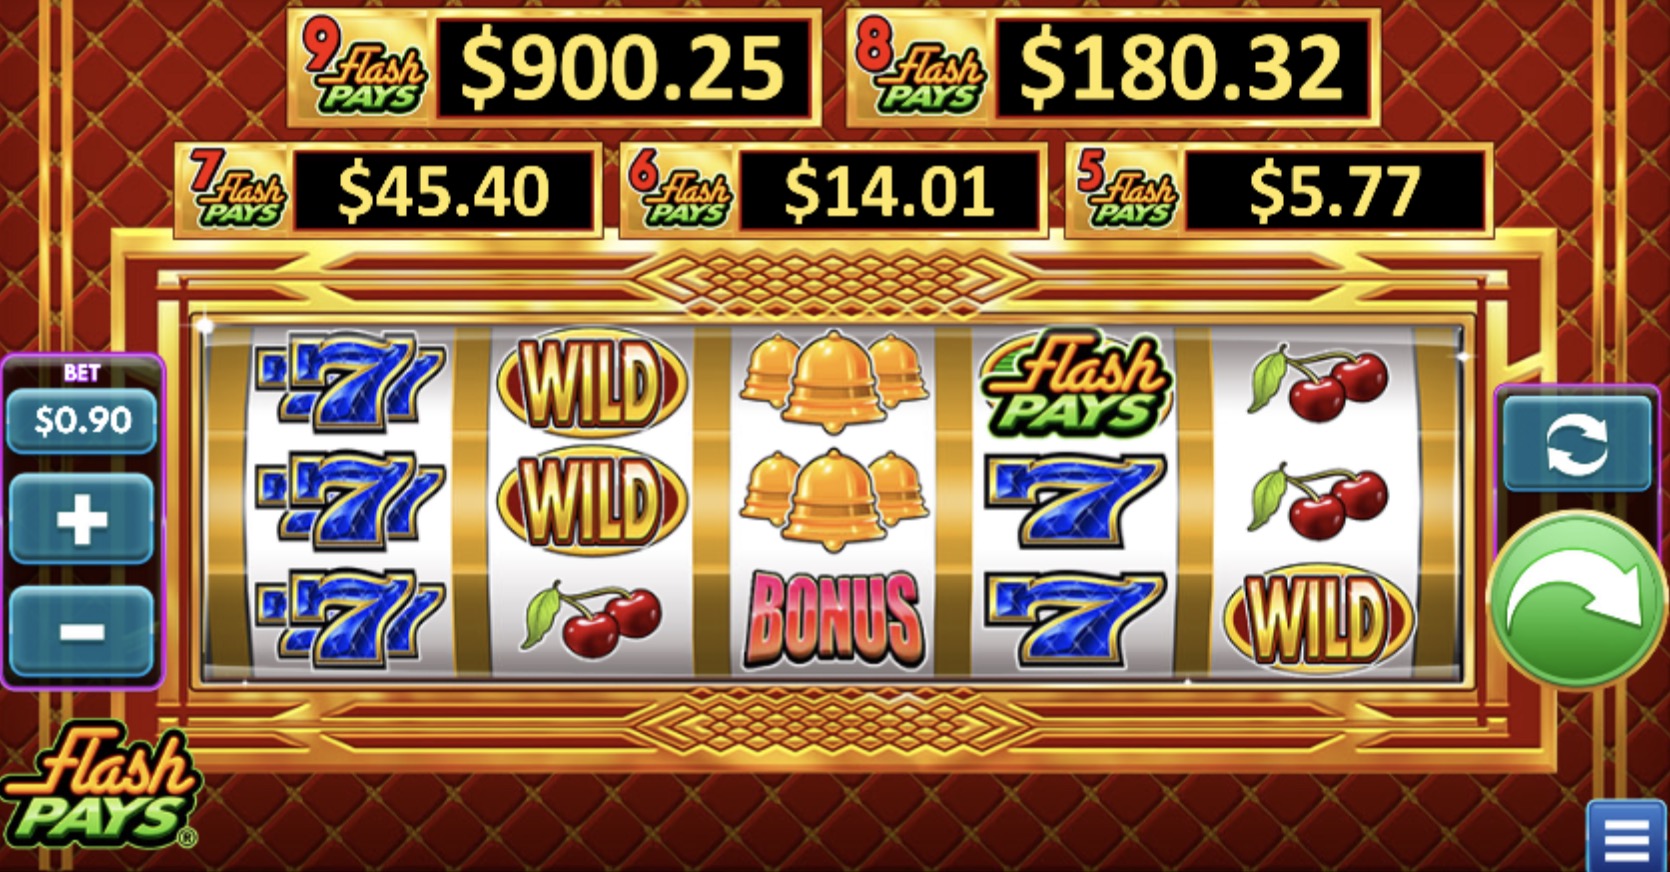 Ретро игровые автоматы «Flash Pays» в SOL казино